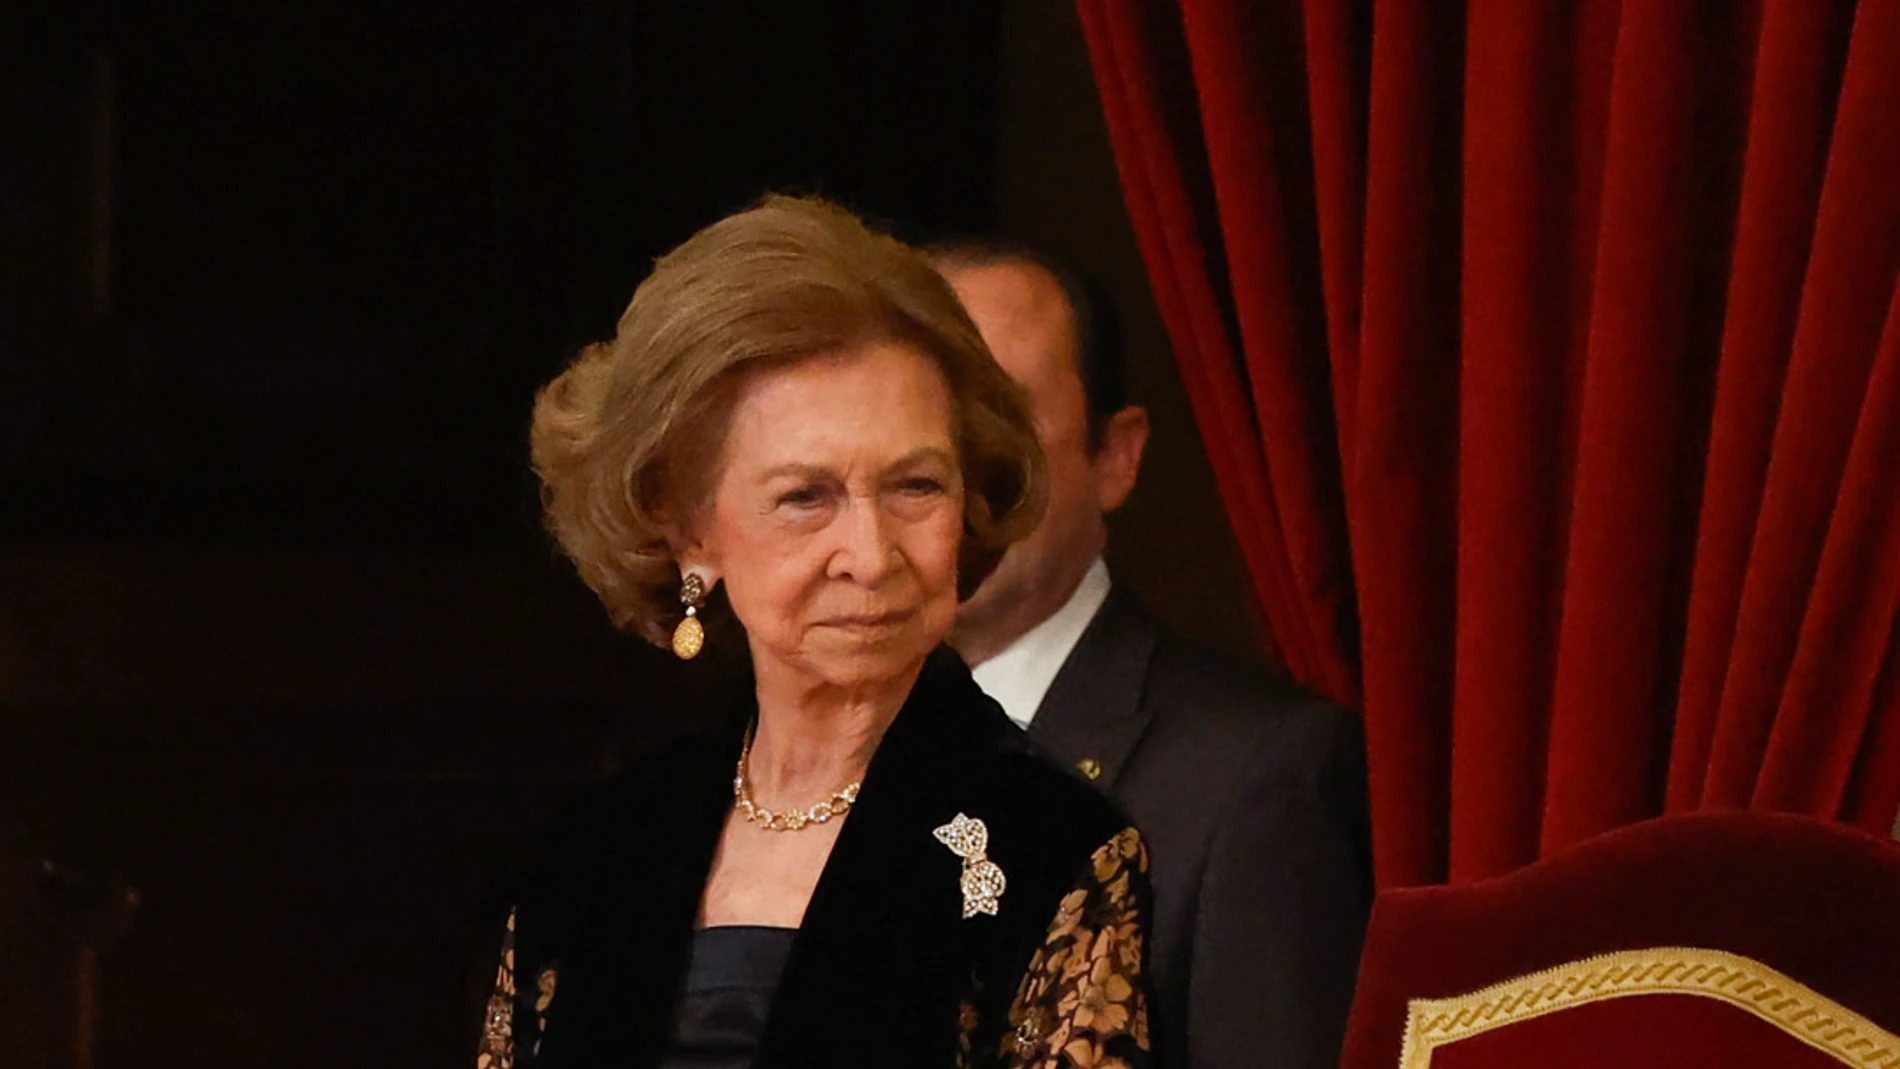 La reina Sofía sufre pérdidas de memoria de menor intensidad que la tía Pecu